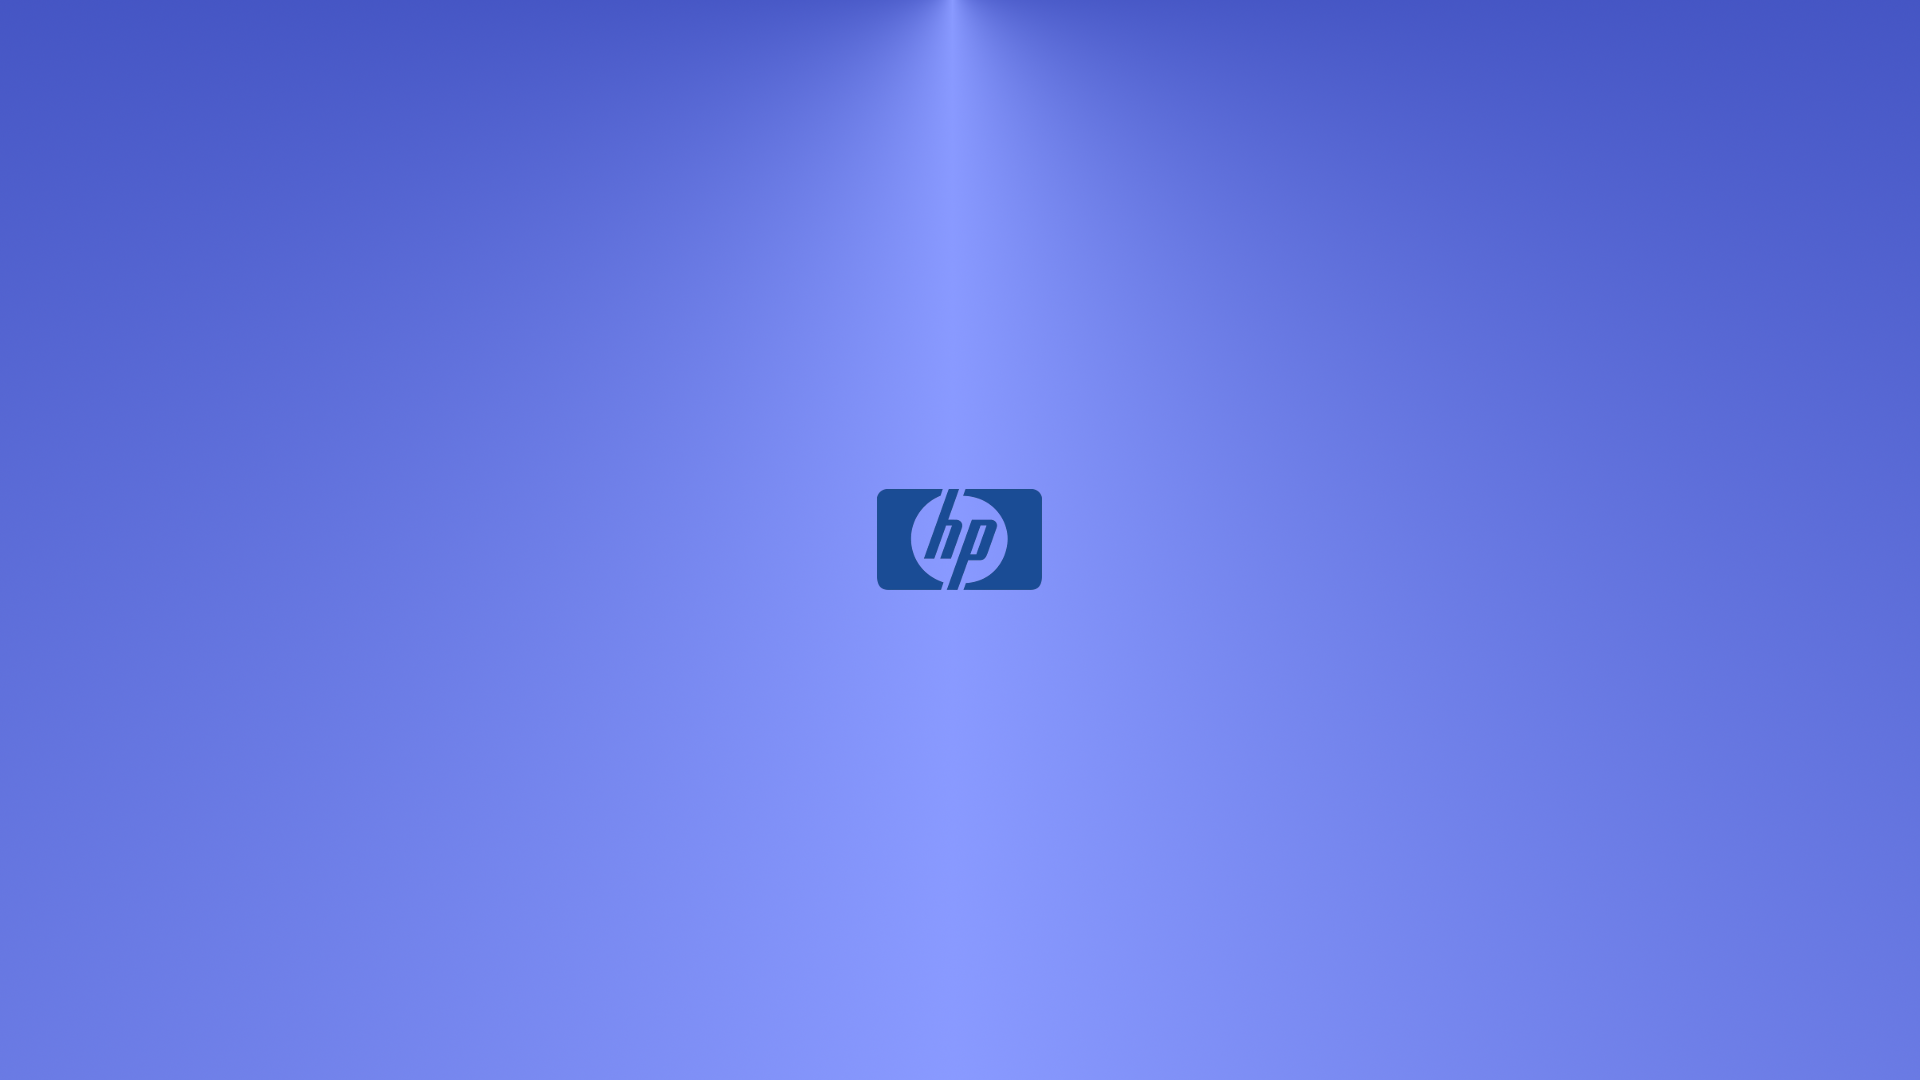  47 3D  HP  Logo Wallpaper  on WallpaperSafari